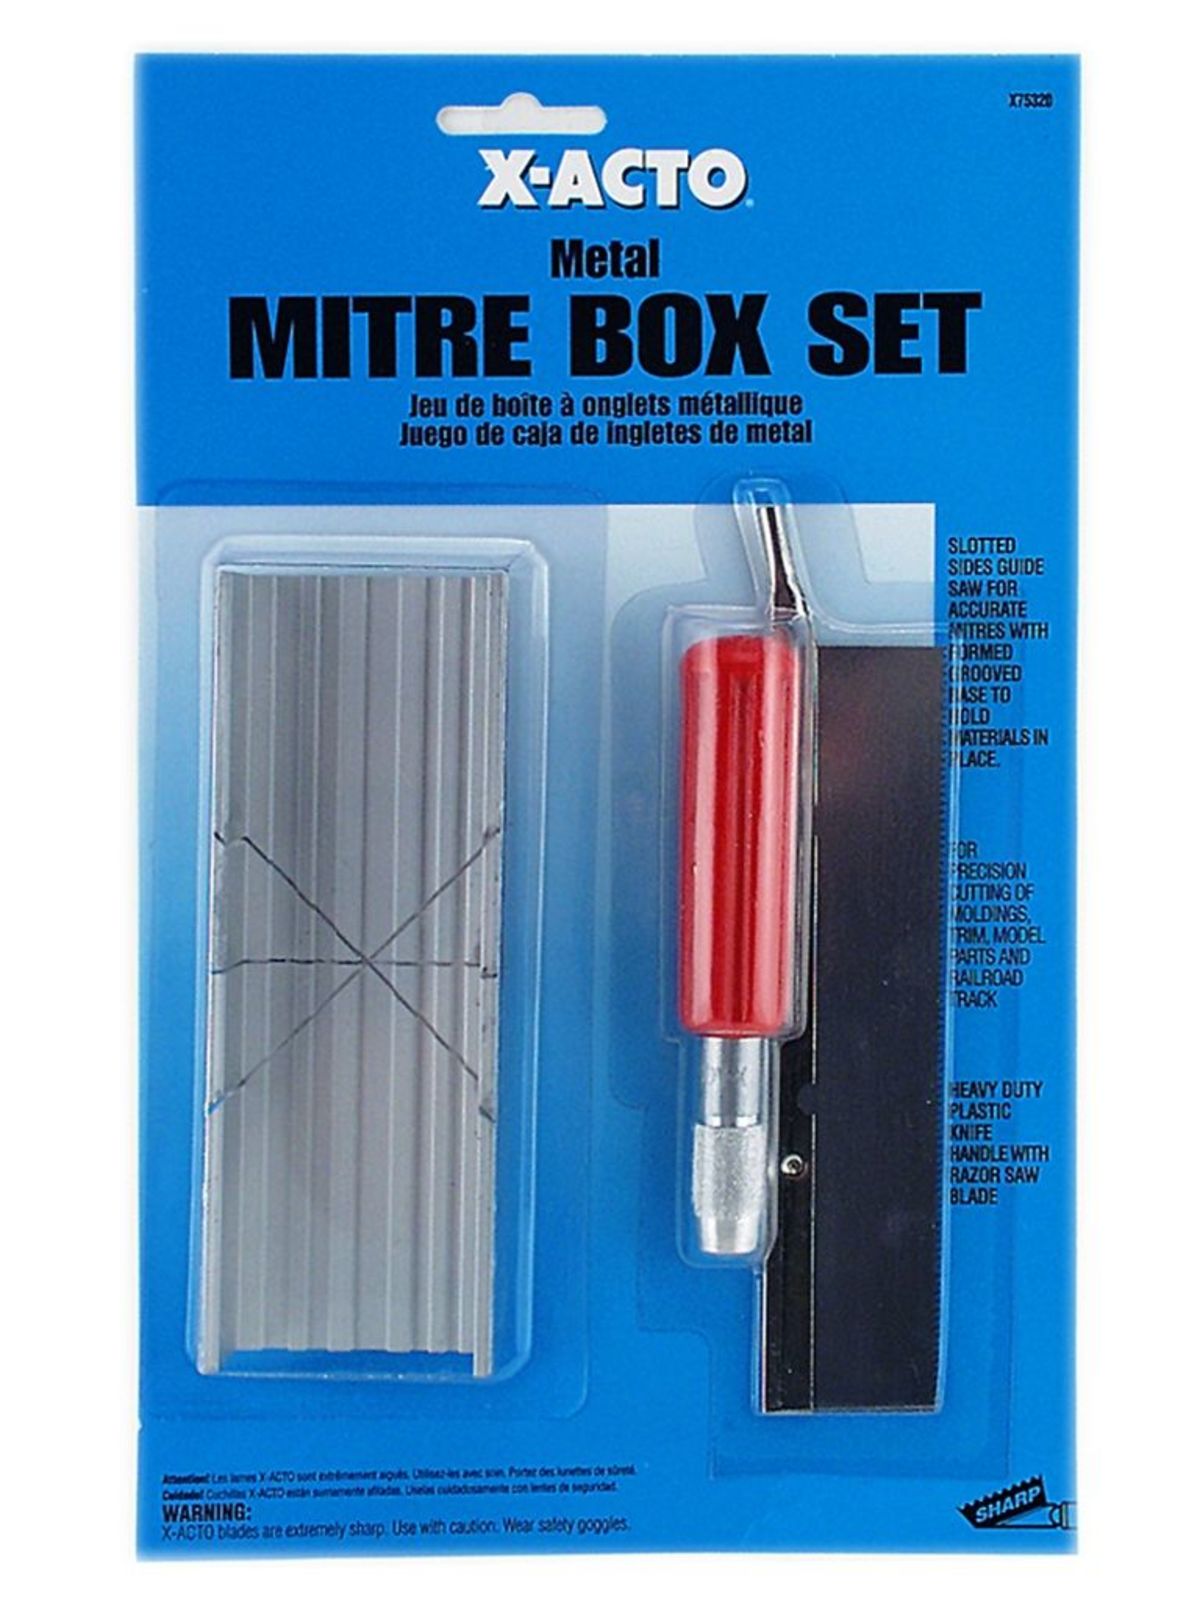 No. 7532 Small Mitre Box Set Small Mitre Box Set